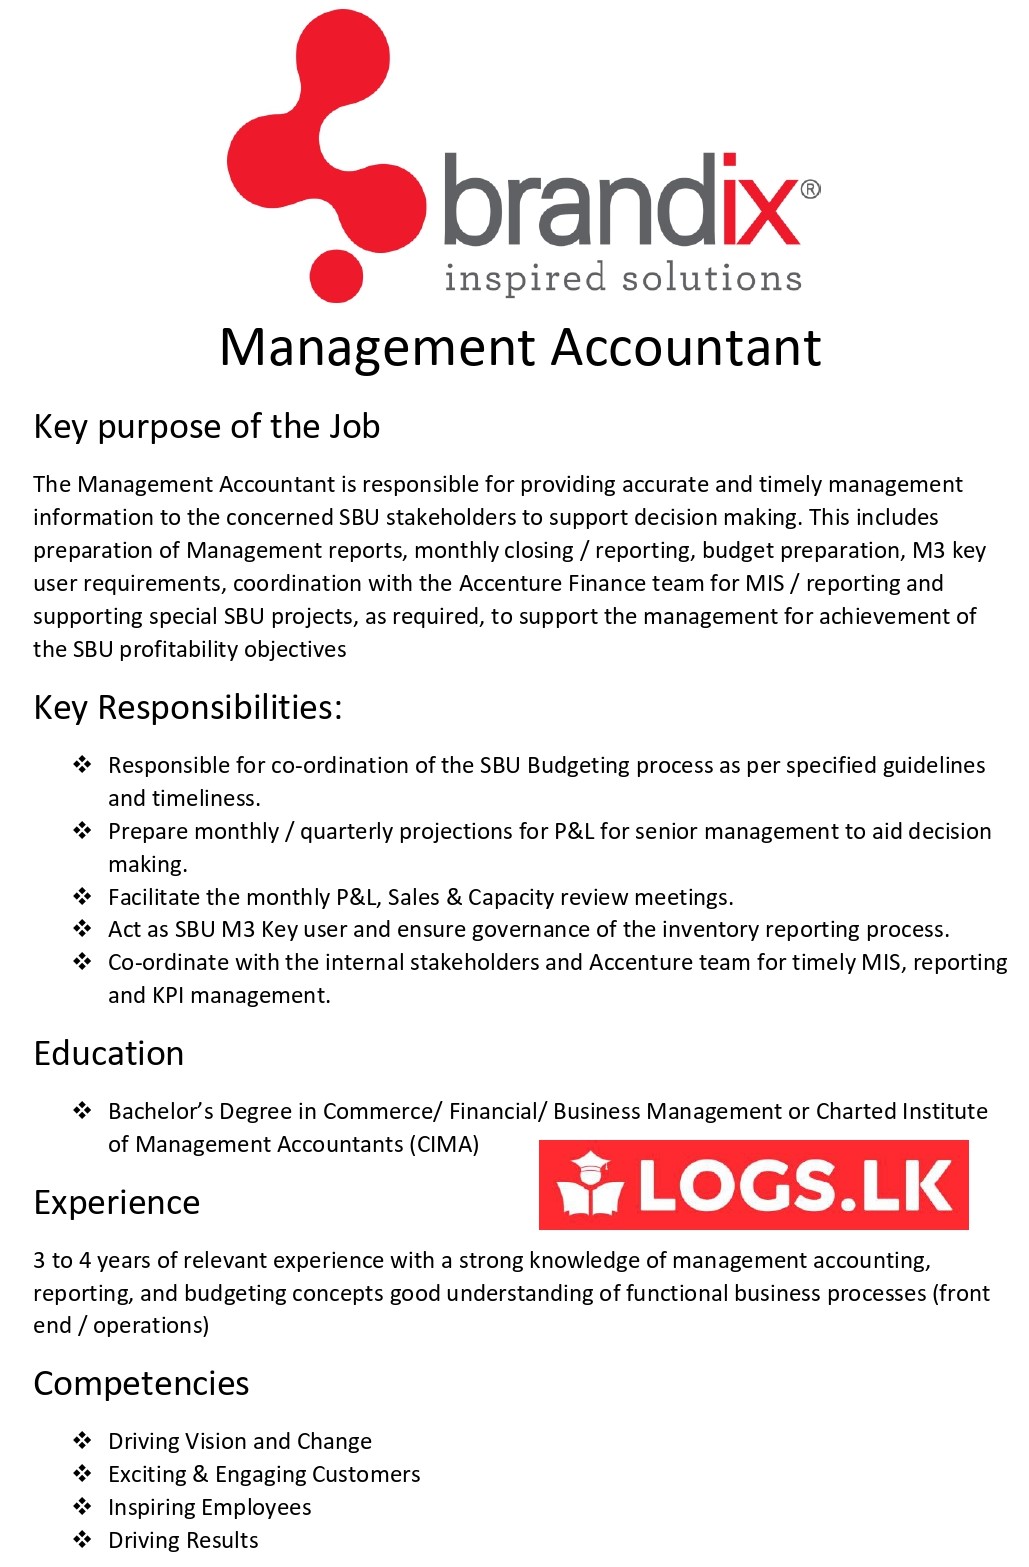 Management Accountant Jobs Vacancies - Brandix Sri Lanka Jobs Vacancies